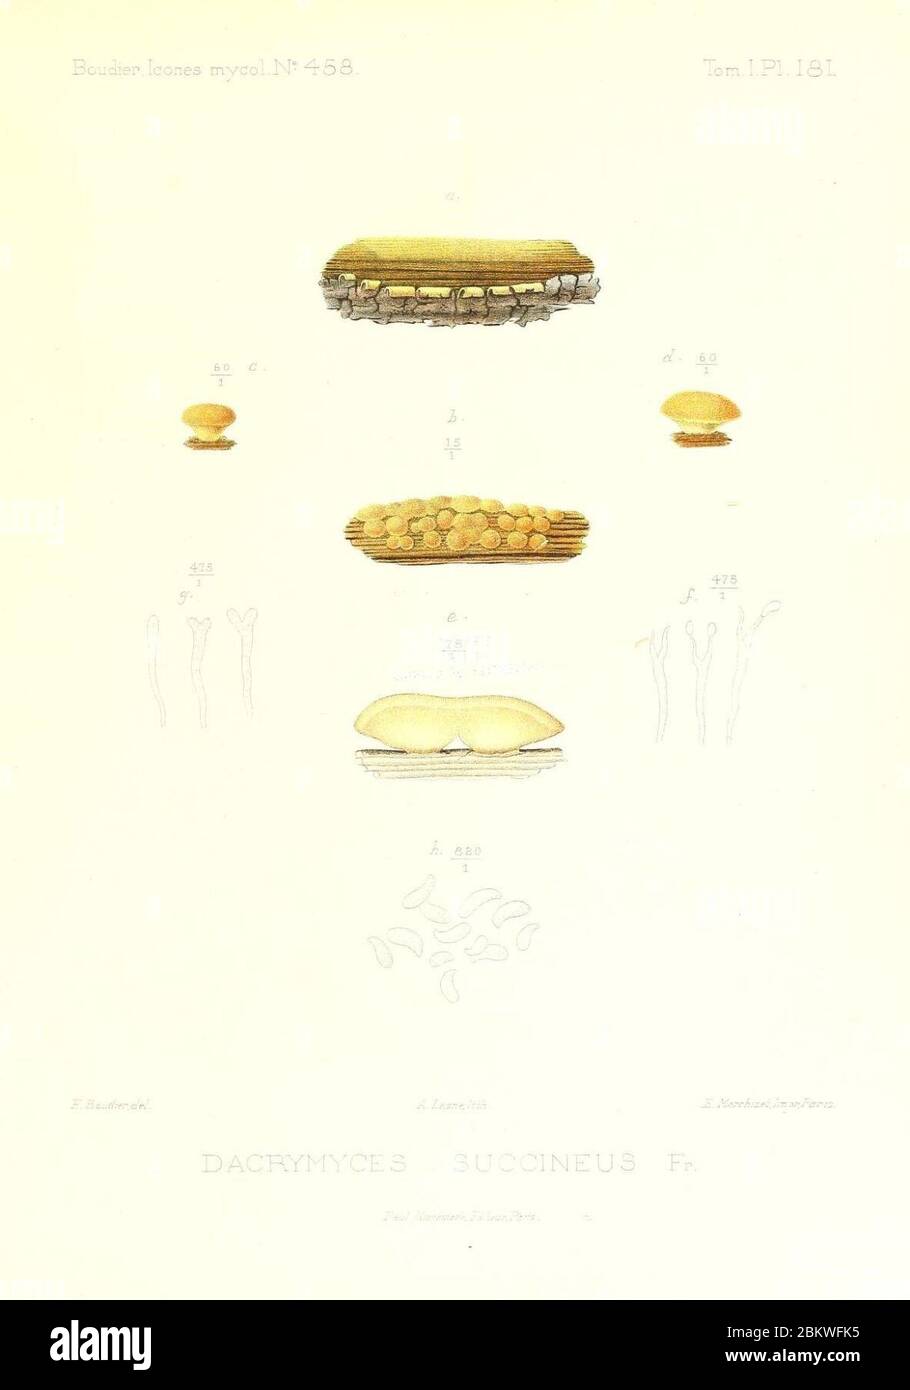 Icones mycologicæ, ou Iconographie des champignons de France principalement Discomycetes (Pl. 181) (9801359195). Stock Photo